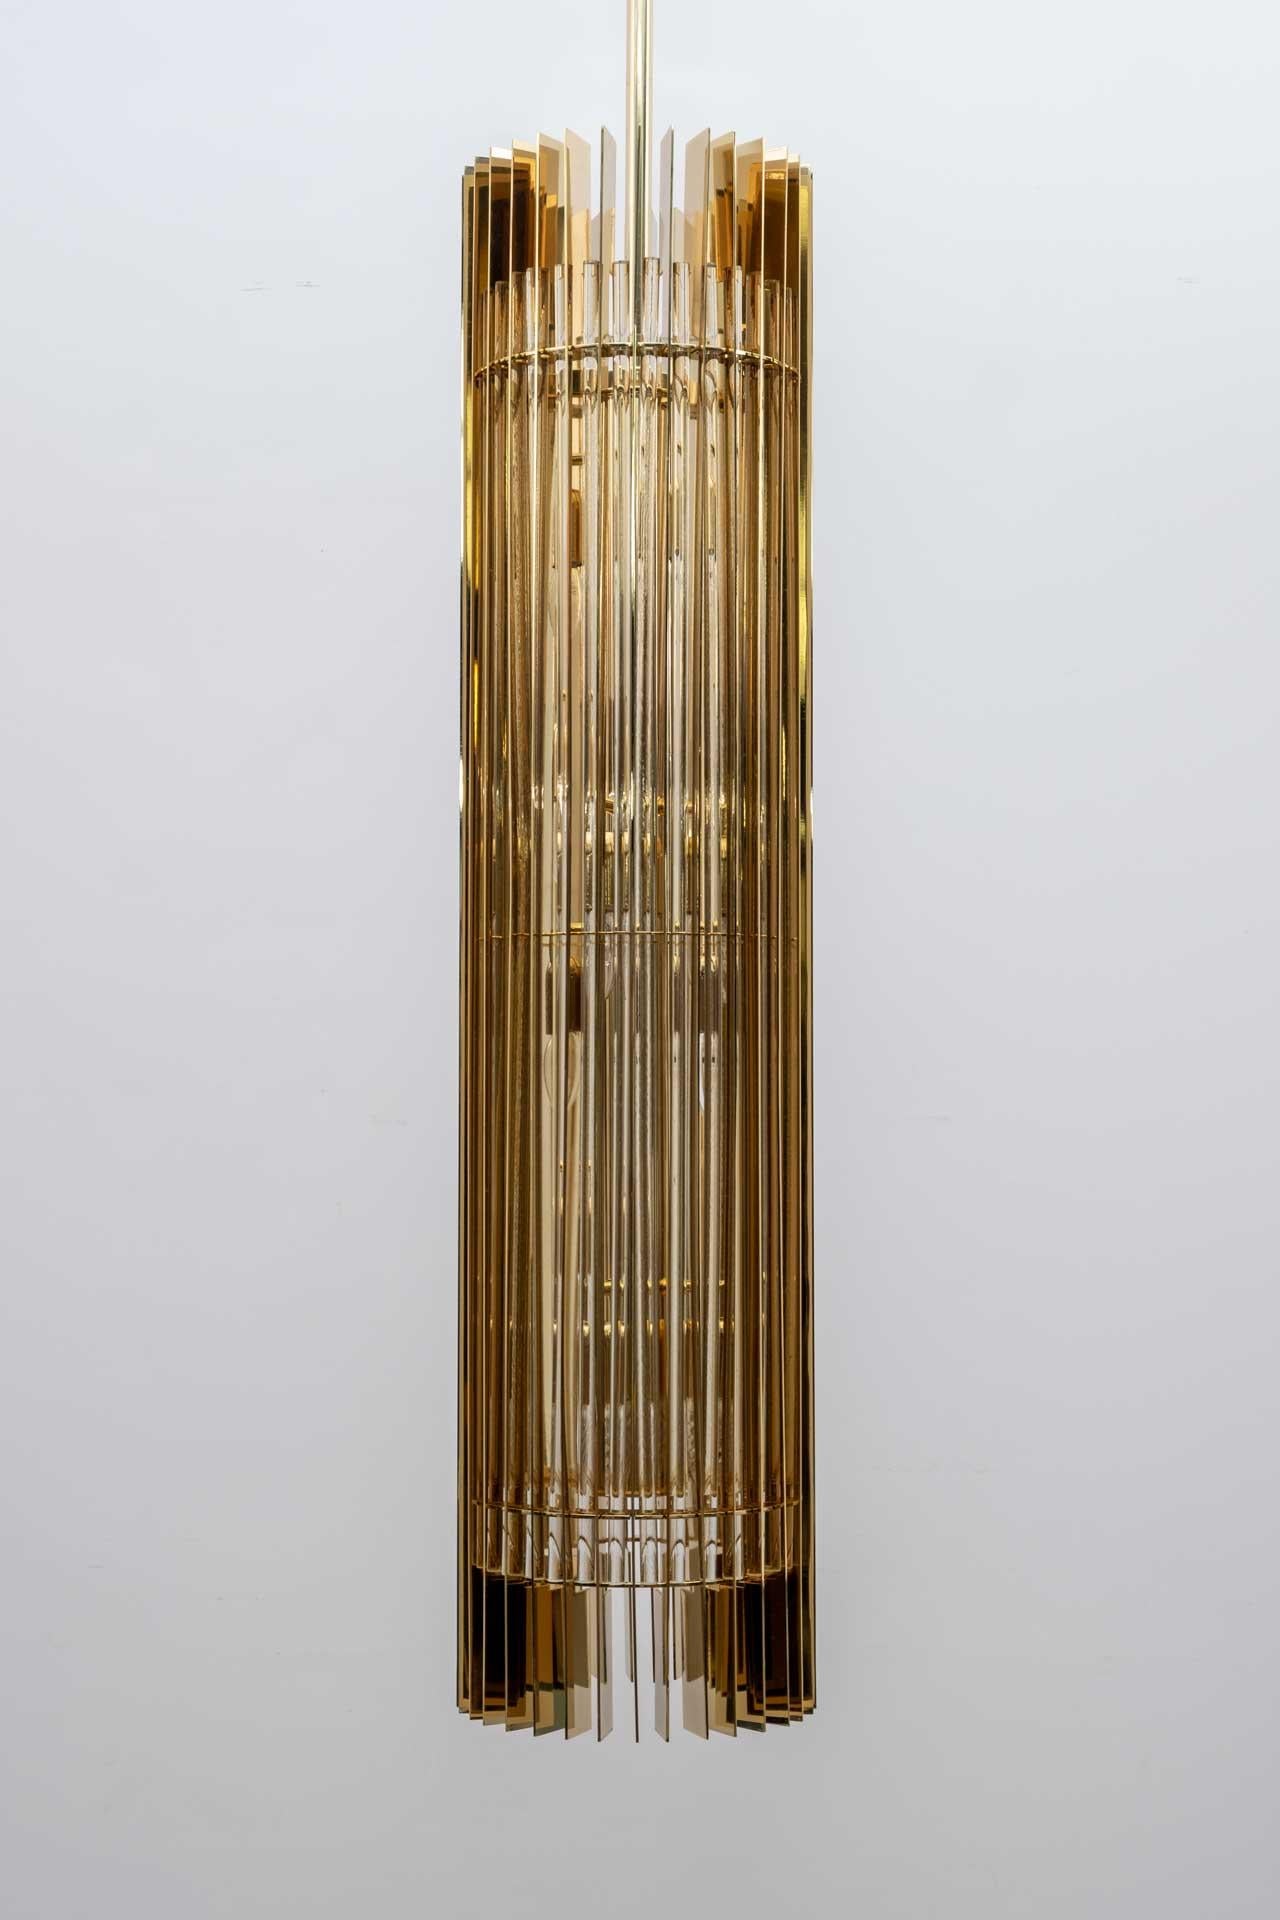 Lampe à suspension conçue exclusivement pour les intérieurs des magasins Gucci. Conçu par Romani Saccati Architetti et produit en 2005 par Studio Design Italia. La base métallique est en laiton laqué, les tiges sont en cristal poli miroir, huit